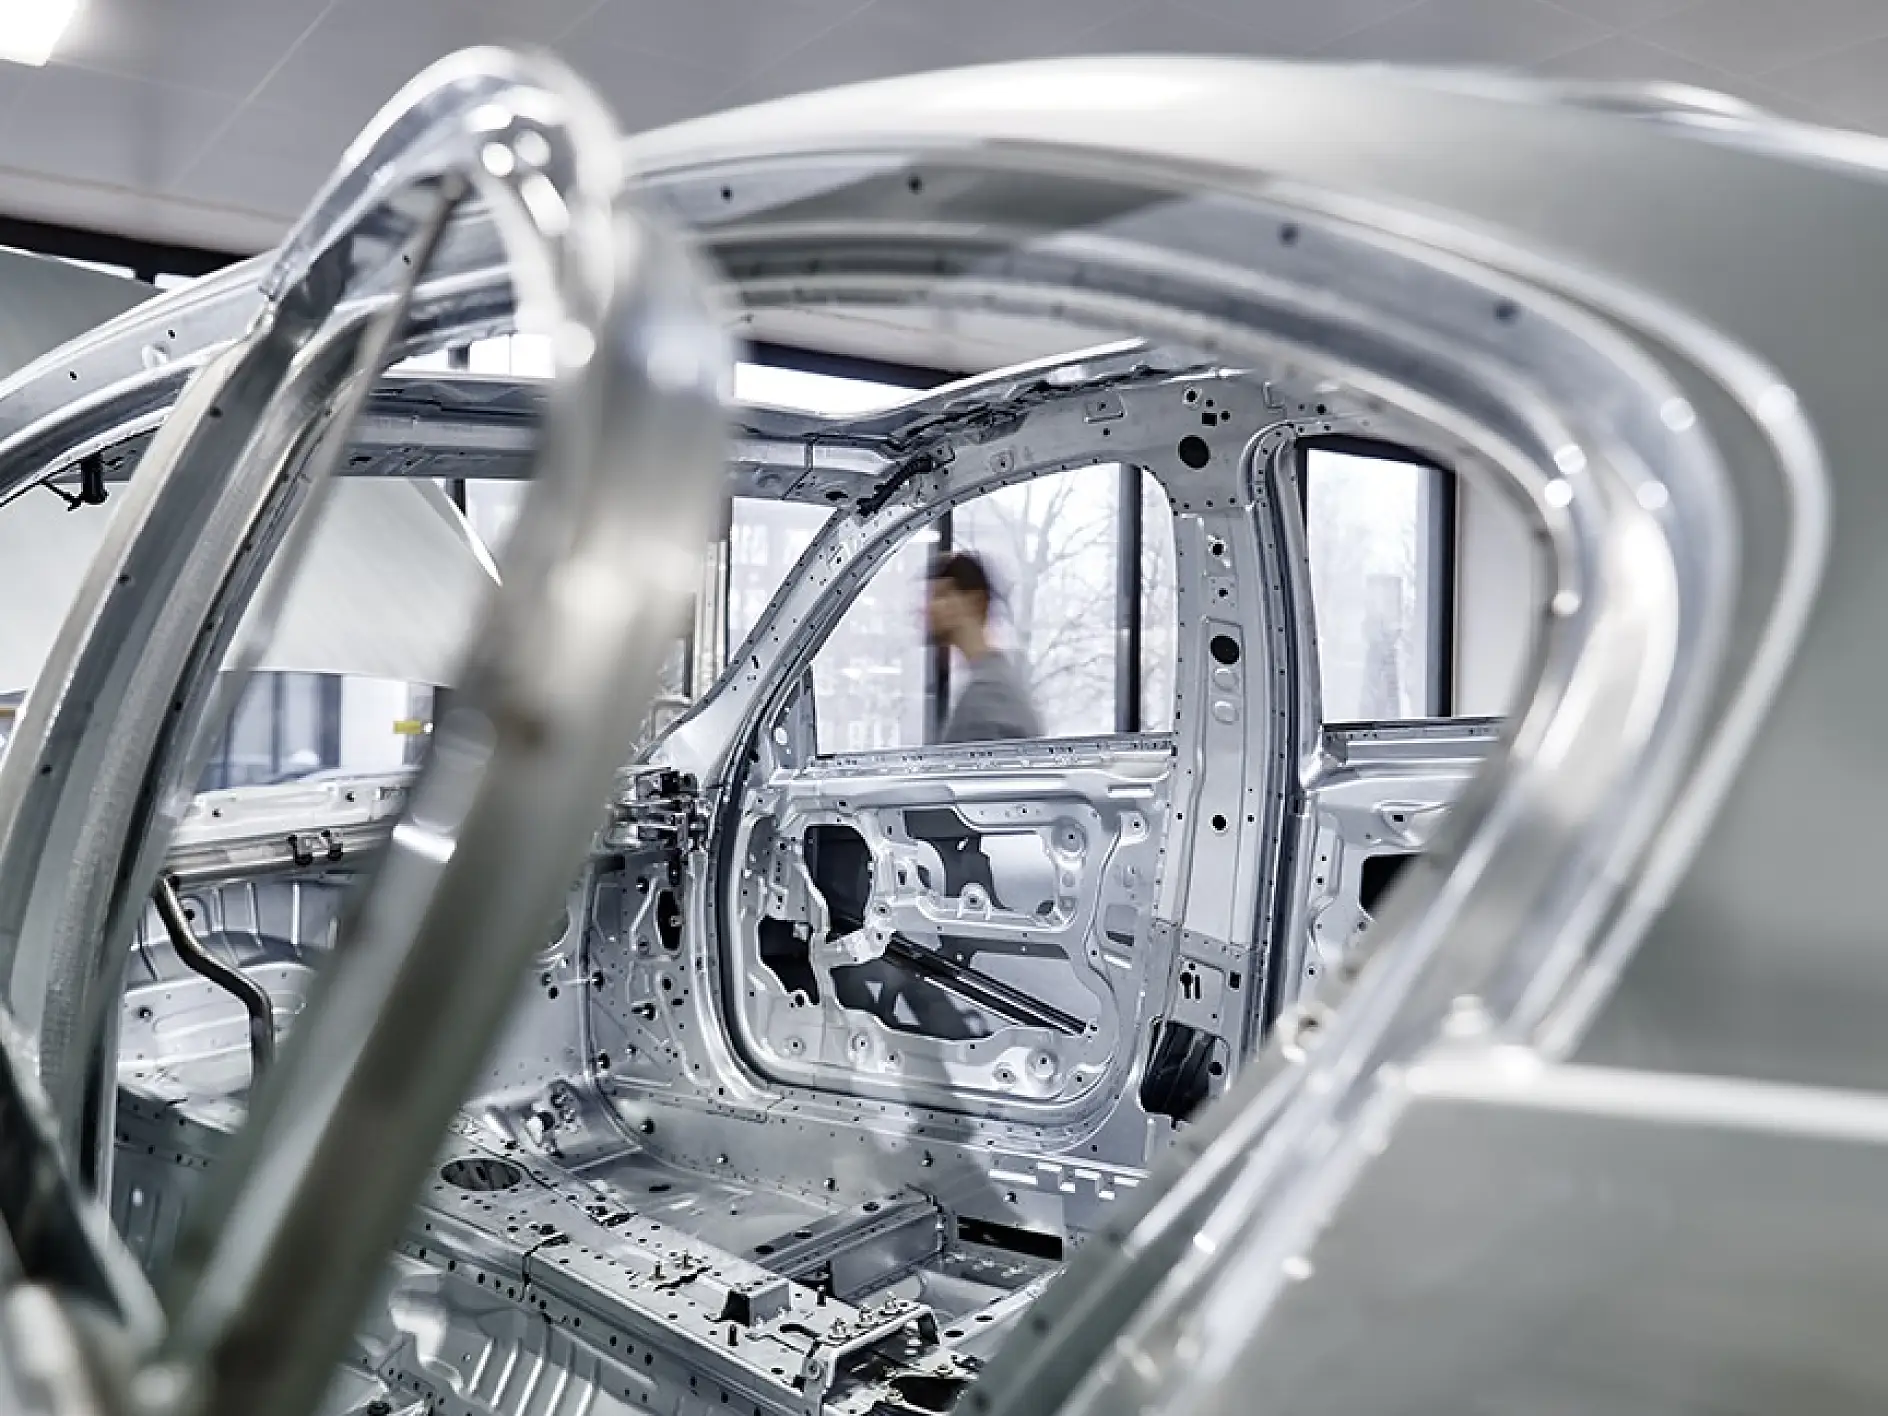 Oferujemy rozwiązania samoprzylepne do zastosowań związanych z maskowaniem otworów w produkcji samochodów